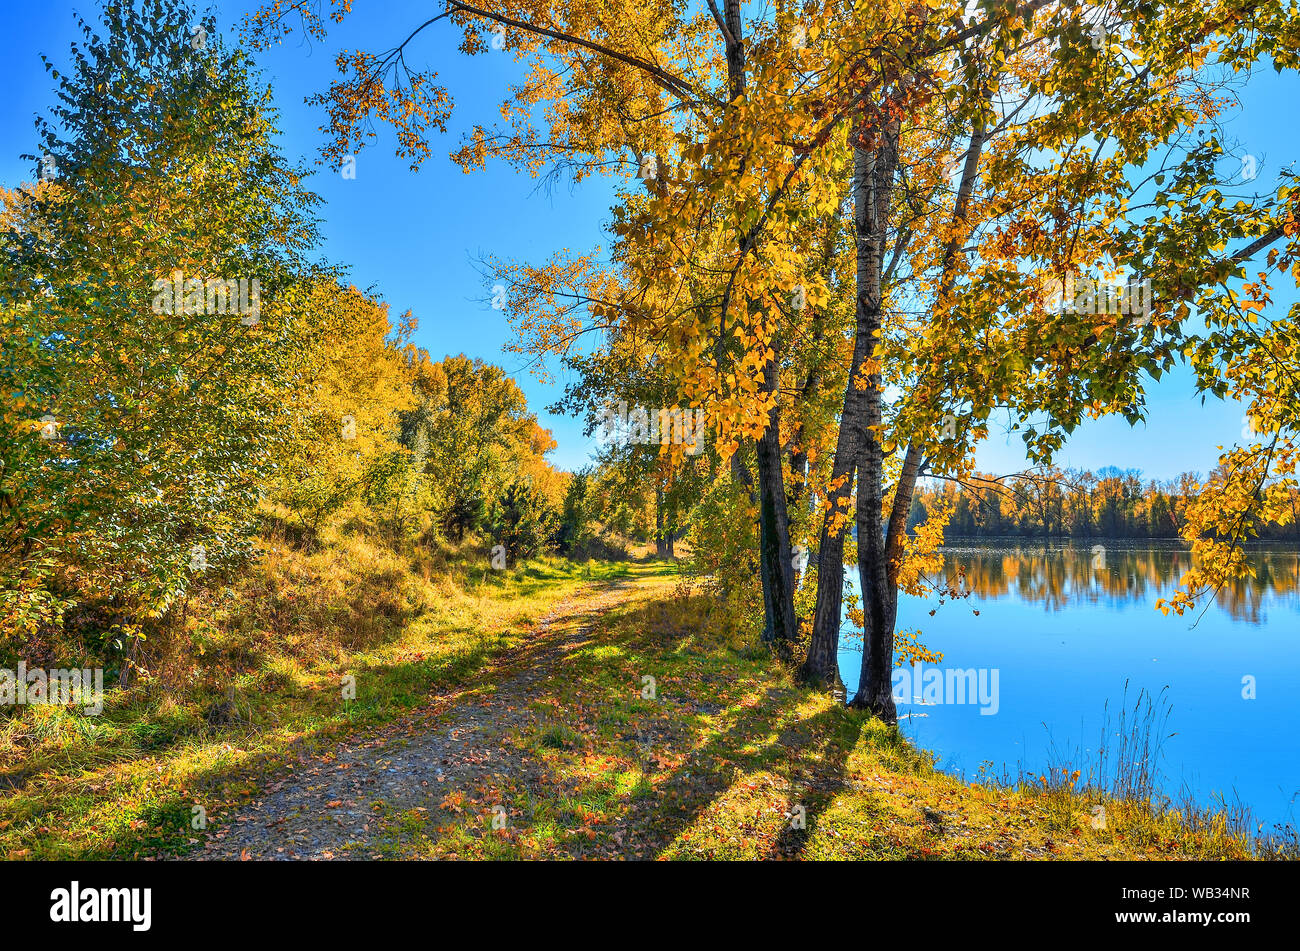 Goldener Herbst am See - malerische Herbst Landschaft in der Nähe von See oder Fluss mit Reflexion der gelbe Bäume Laub in der Wasseroberfläche. Sonnigen Tag w Stockfoto